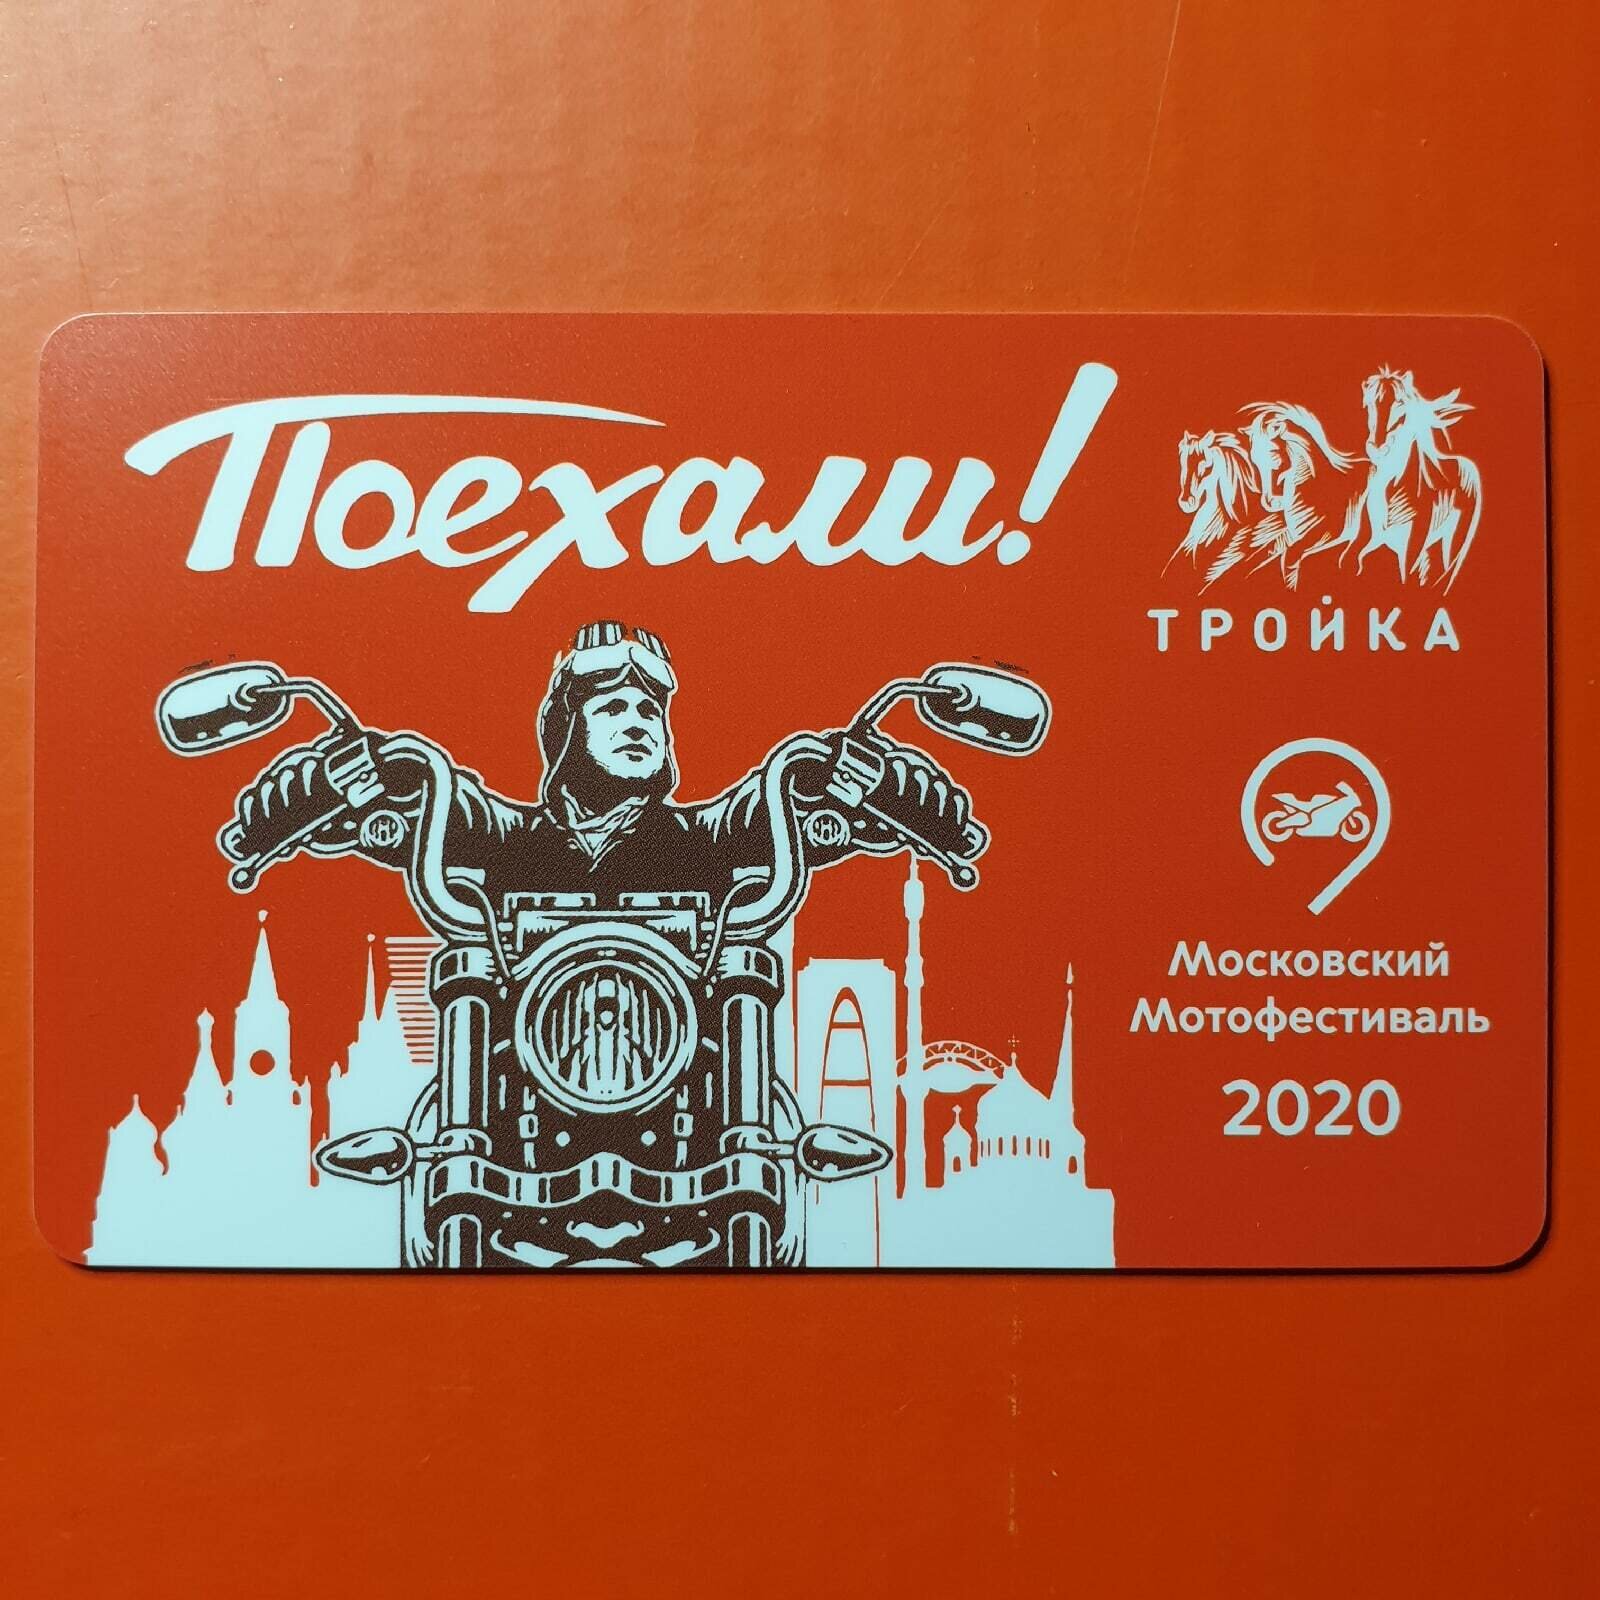 Транспортная карта метро Тройка - Московский мотофестиваль 2020